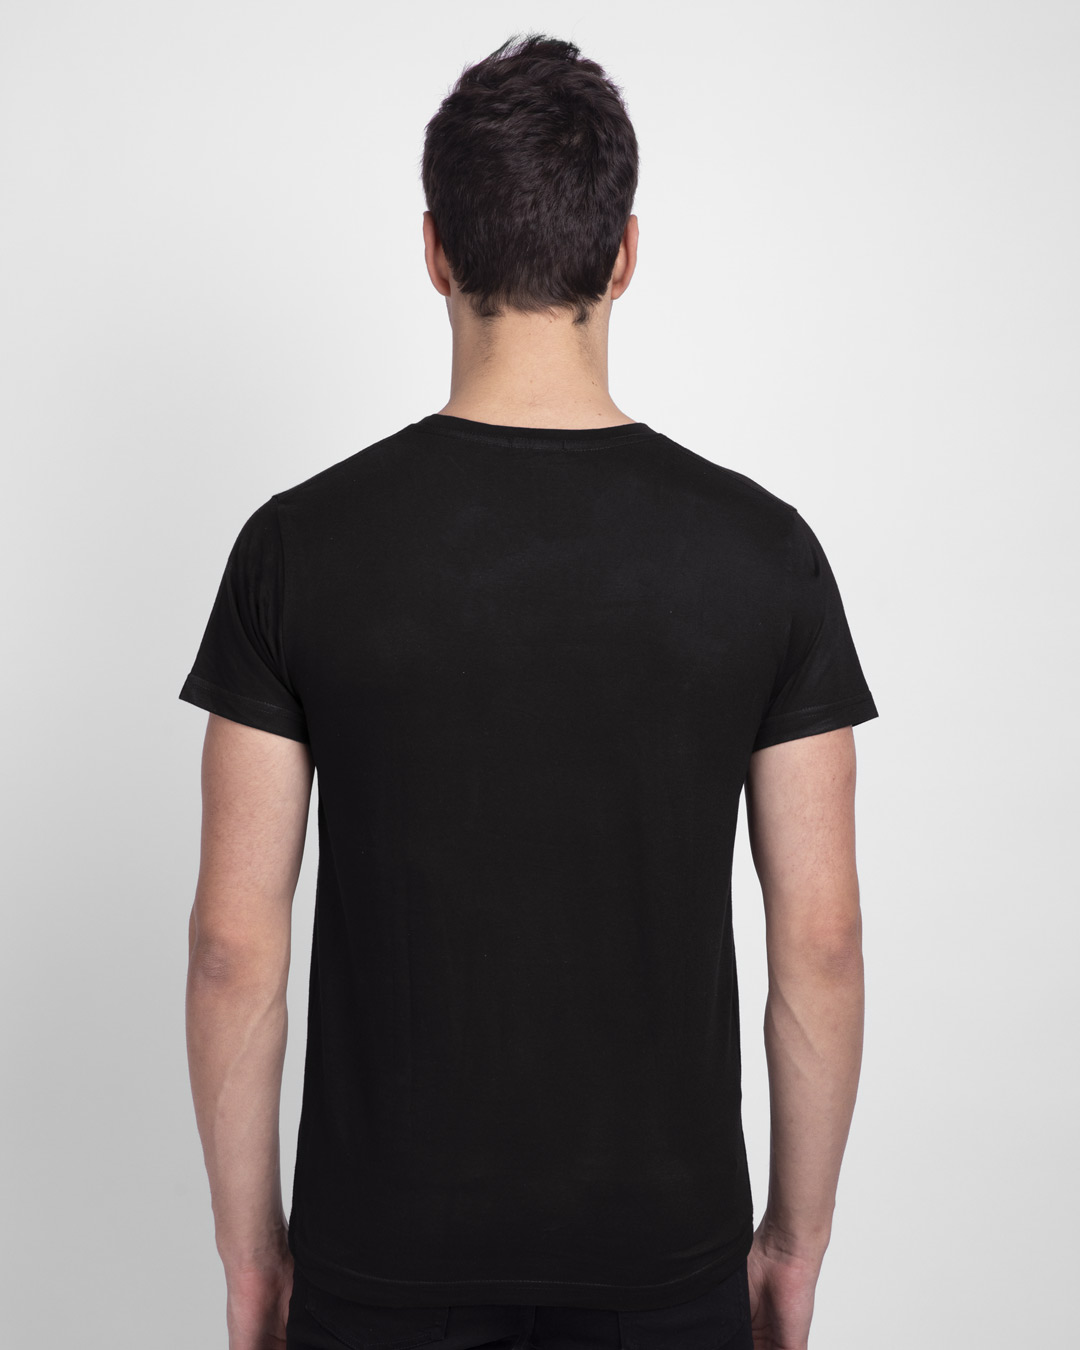 Buy Men's Black Off Road Adventure T-shirt Online at Bewakoof